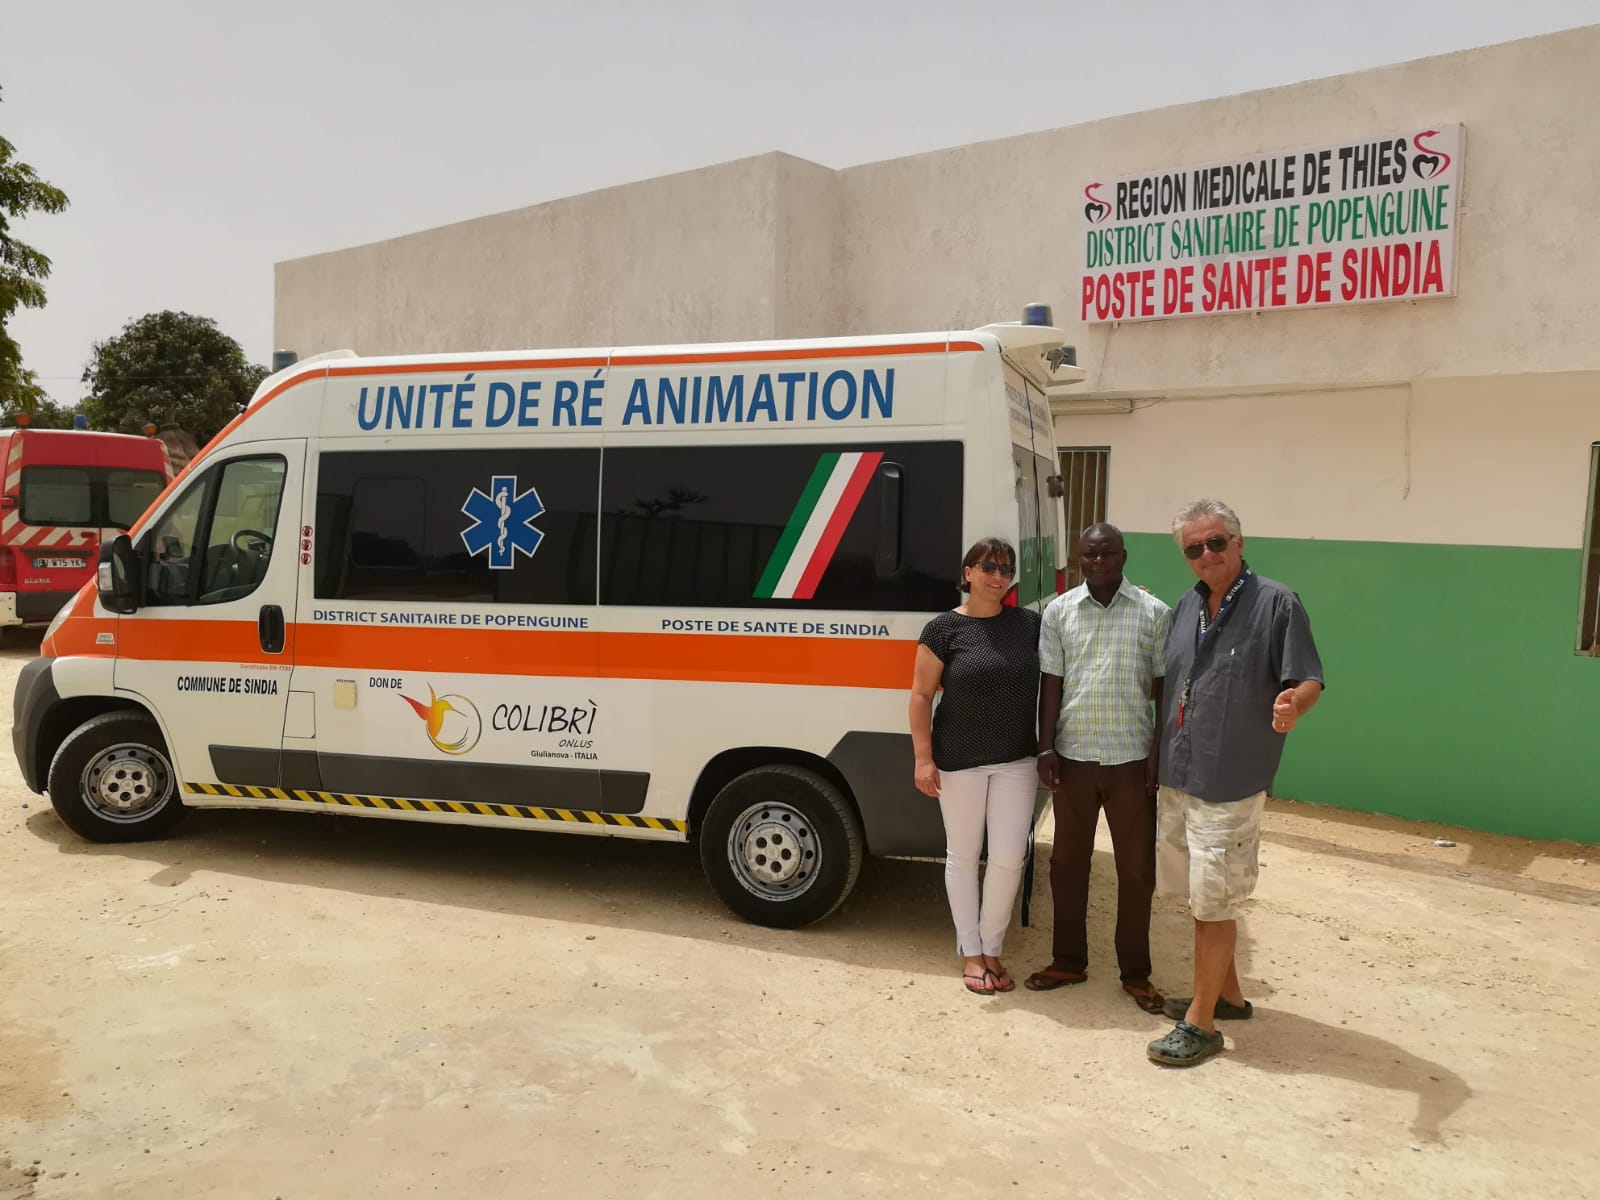 Giulianova&”Colibrì Onlus”:a Sindia(Senegal) completato il presidio ospedaliero